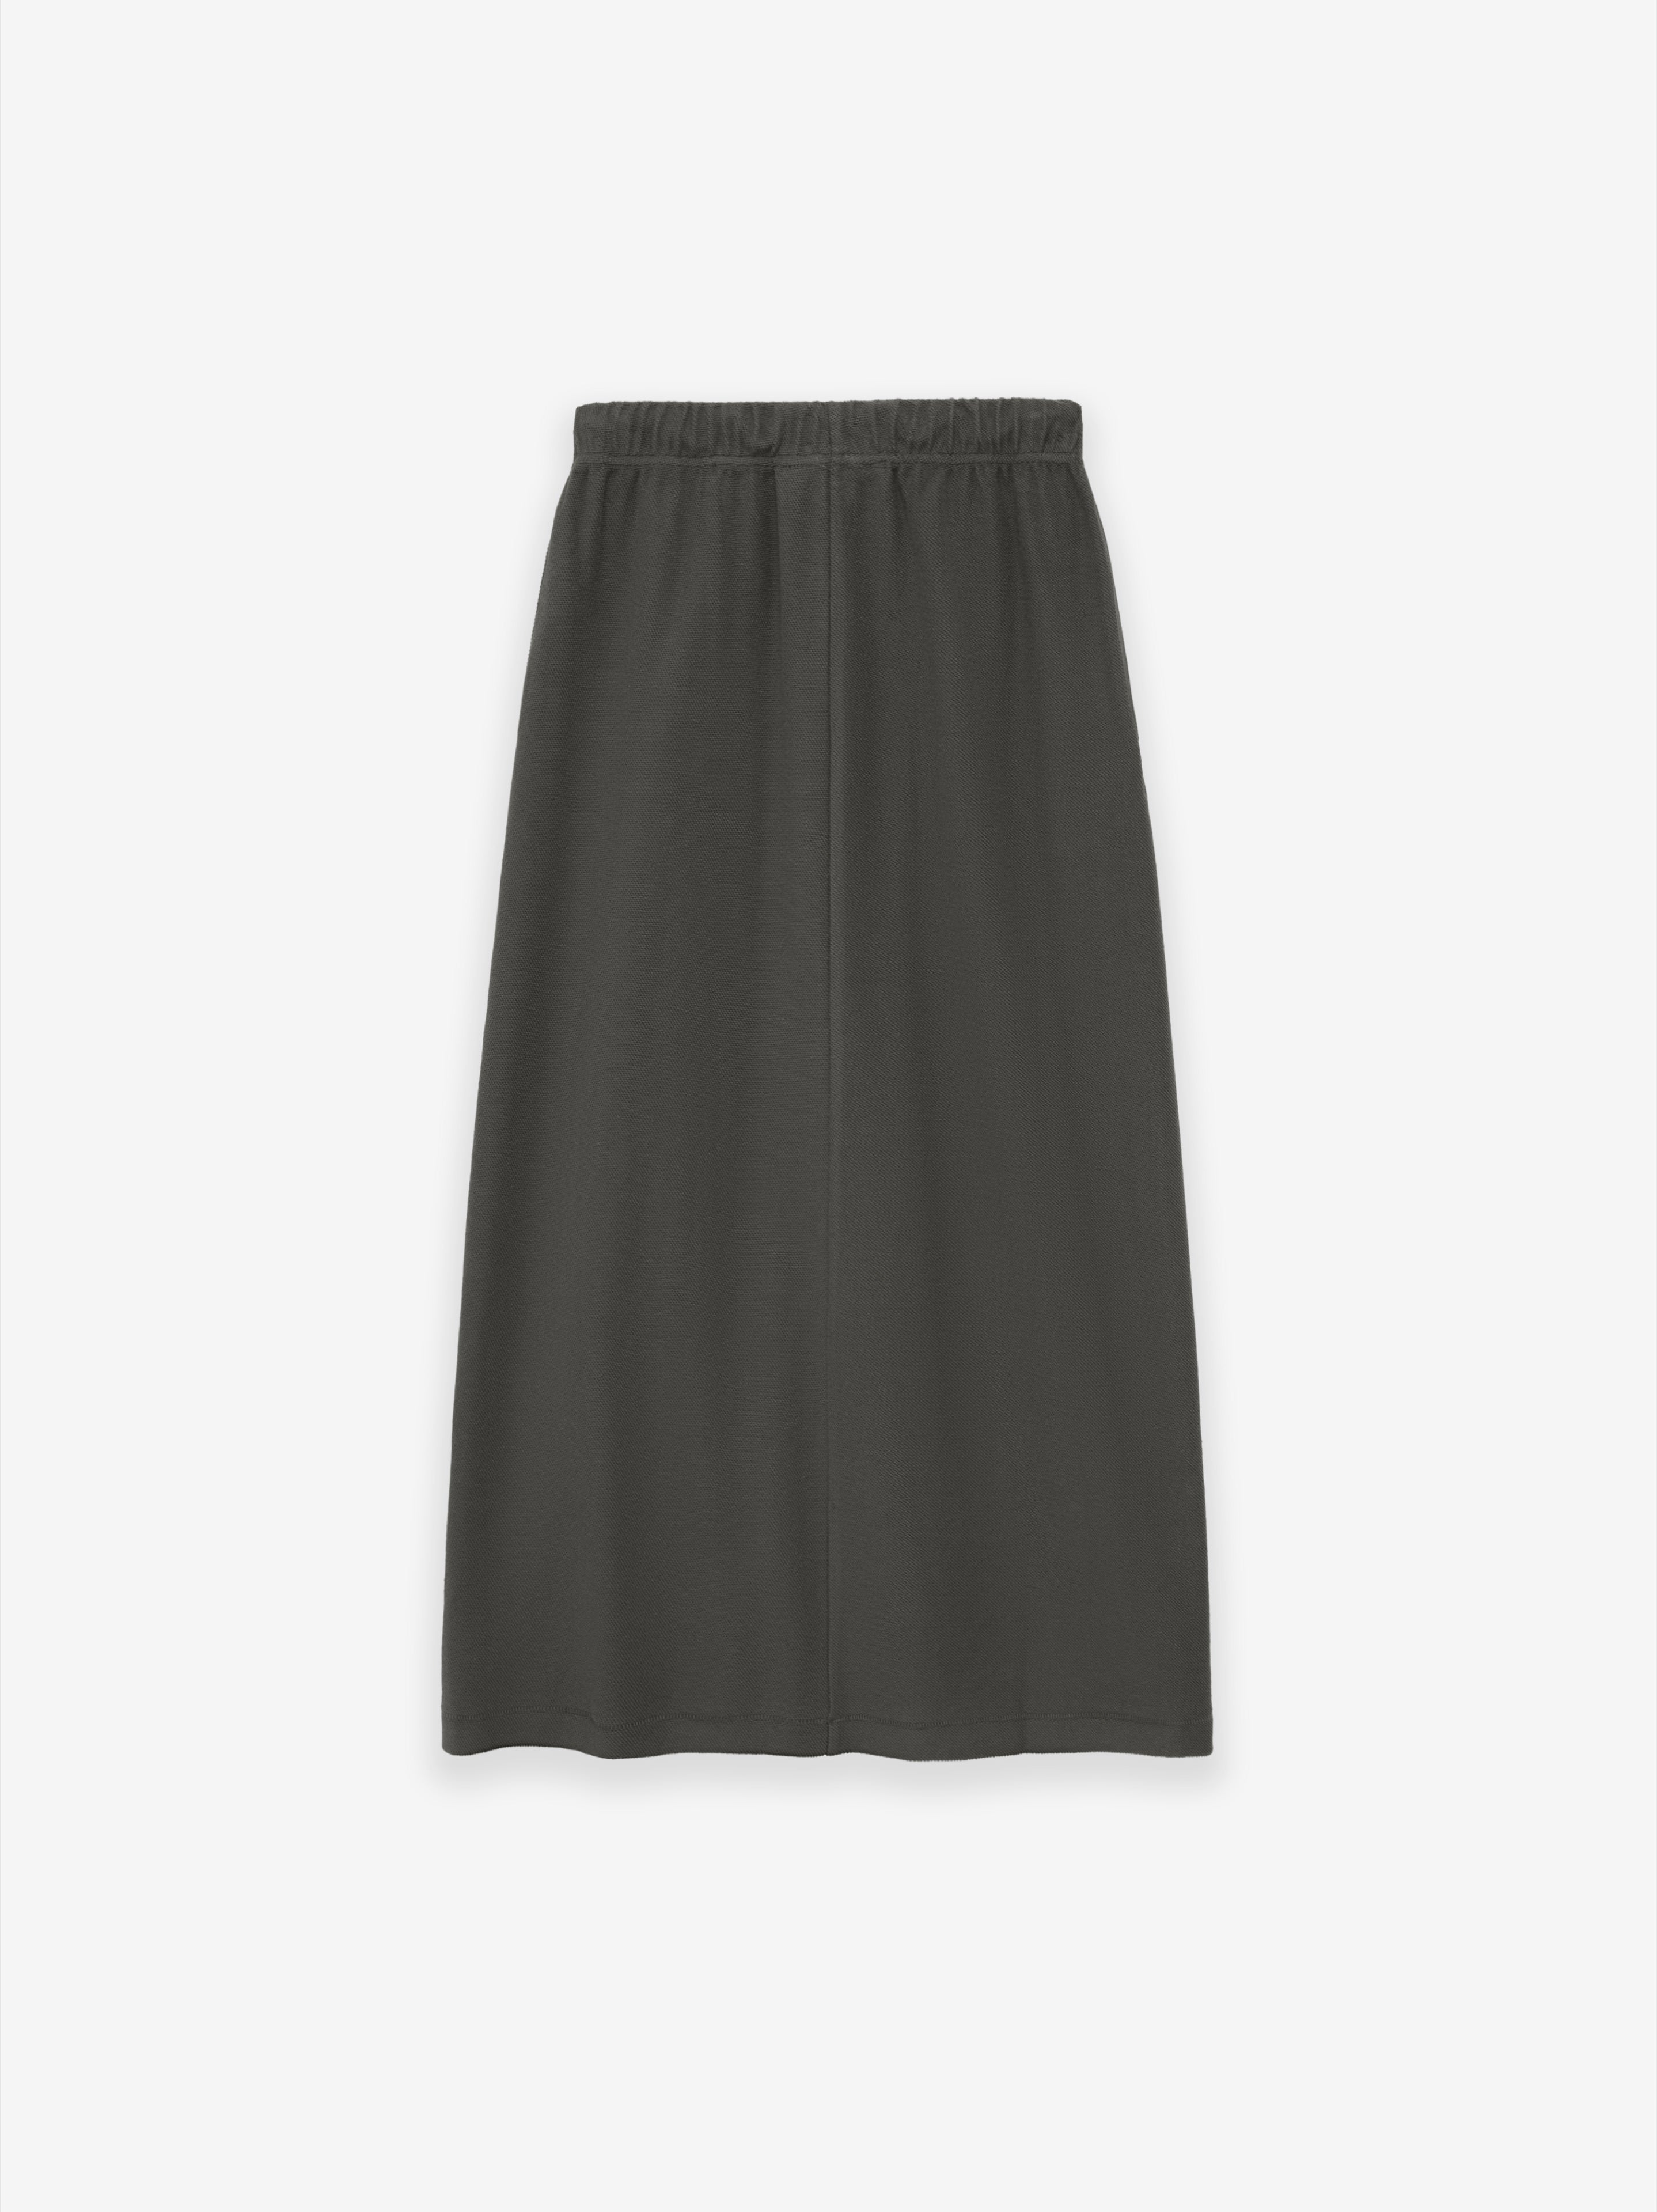 Womens Terry Long Skirt | Fear God of